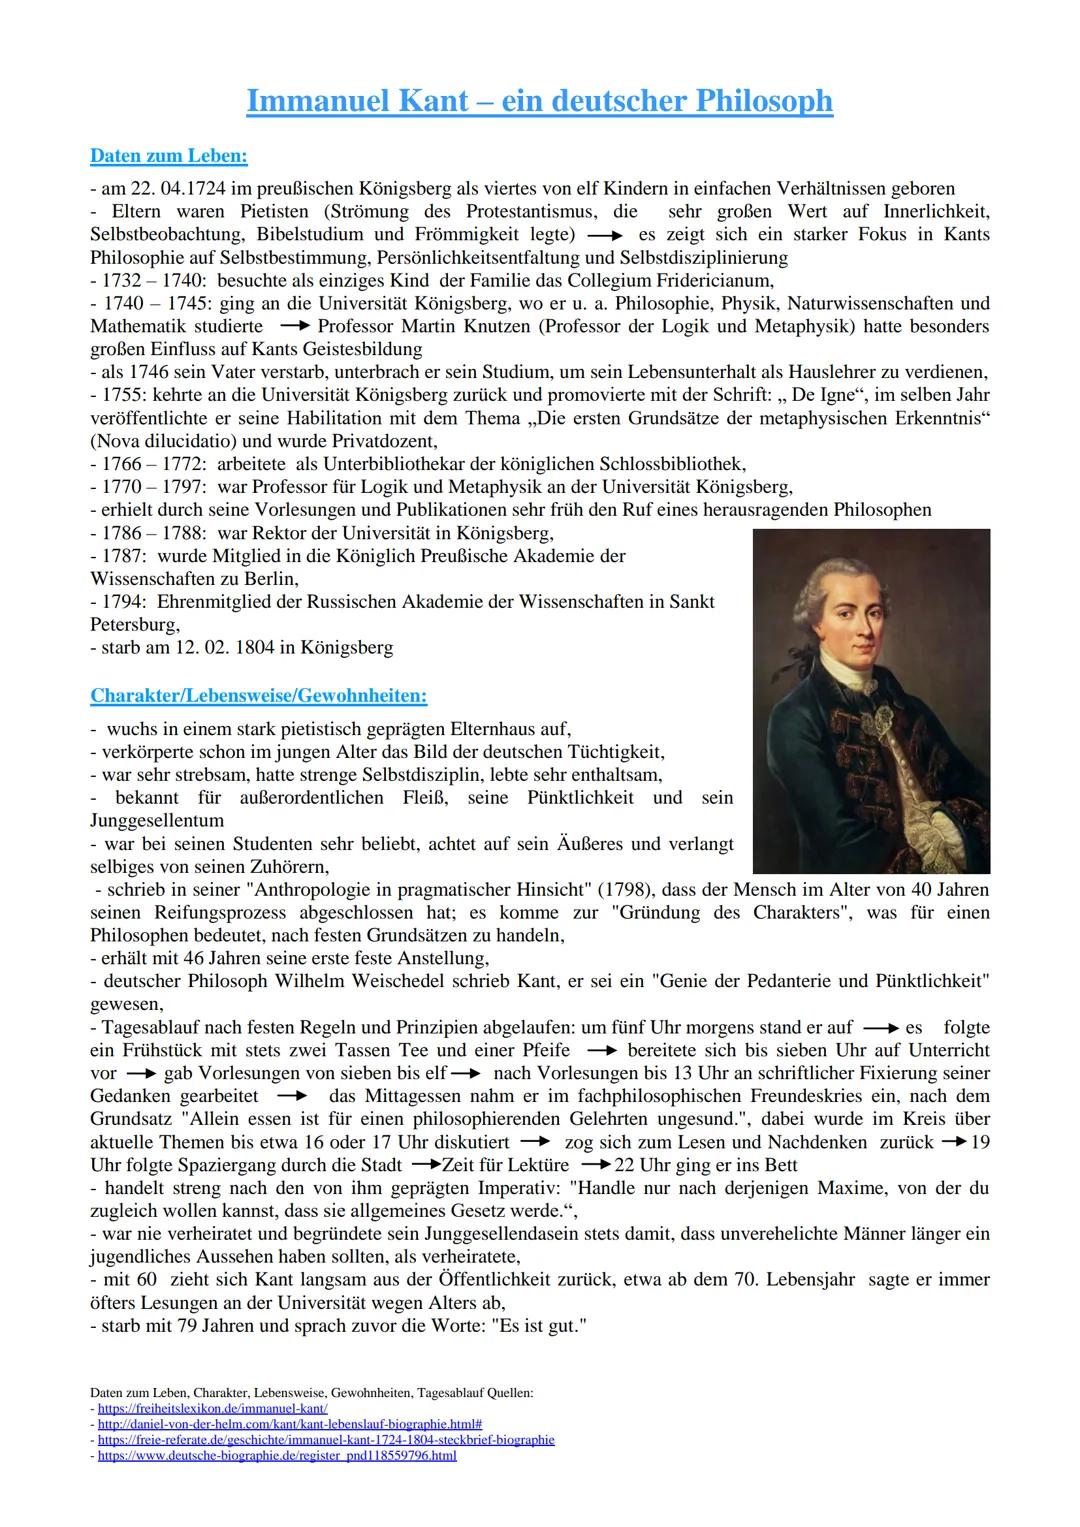 Immanuel Kant - ein deutscher Philosoph
Daten zum Leben:
- am 22.04.1724 im preußischen Königsberg als viertes von elf Kindern in einfachen 